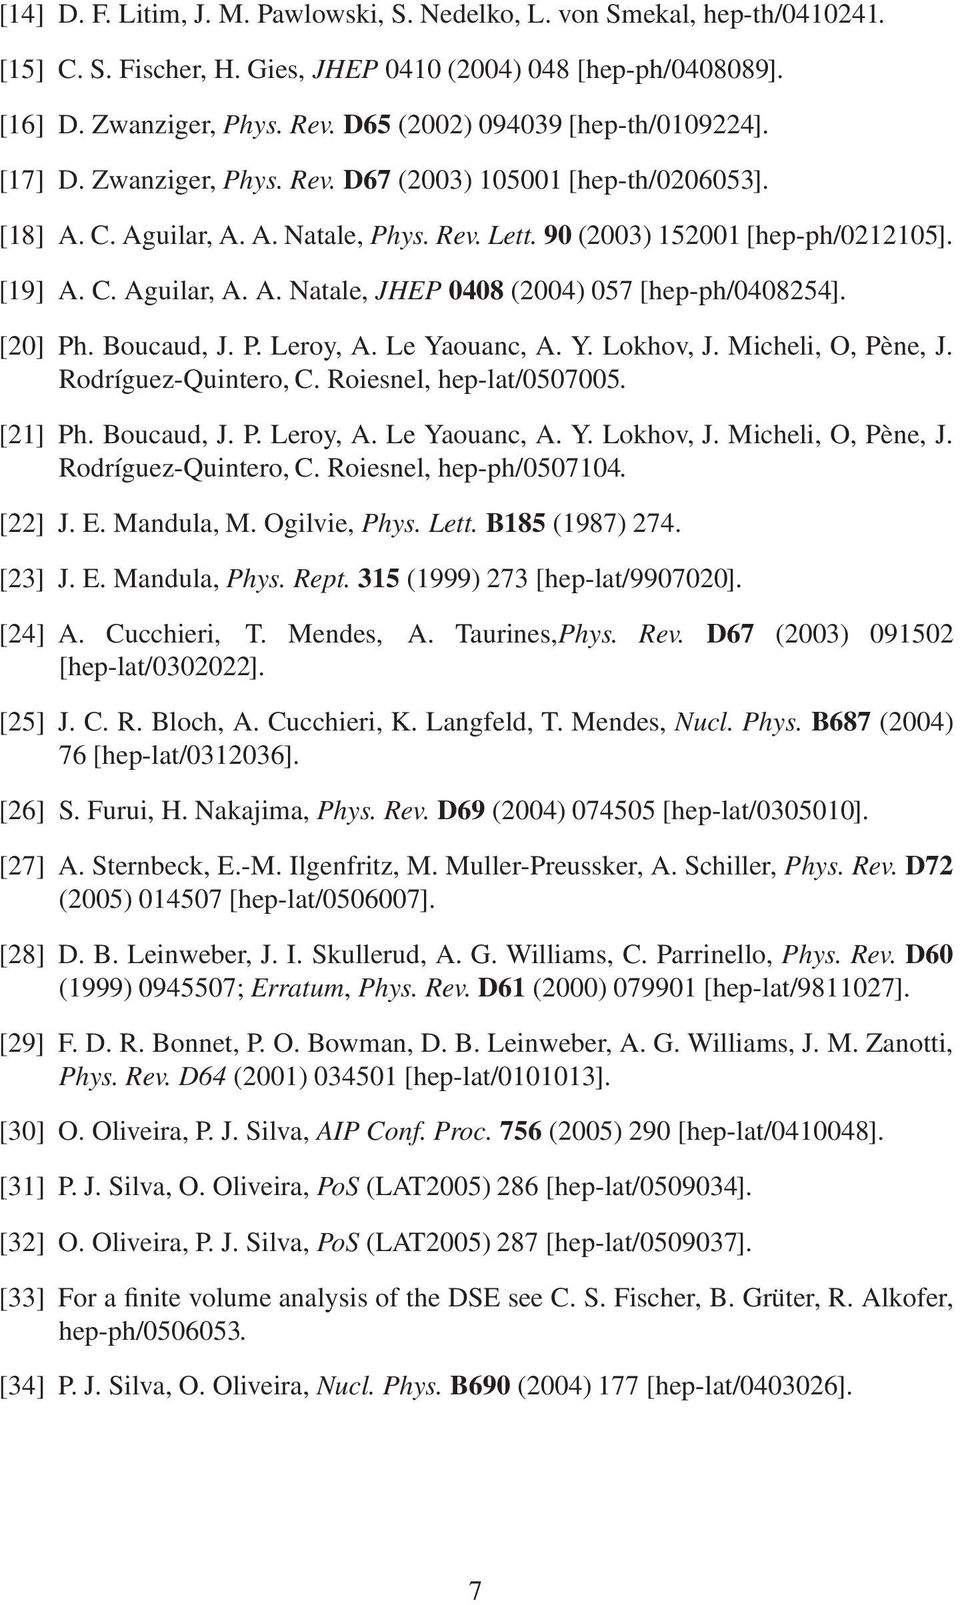 [20] Ph. Boucaud, J. P. Leroy, A. Le Yaouanc, A. Y. Lokhov, J. Micheli, O, Pène, J. Rodríguez-Quintero, C. Roiesnel, hep-lat/0507005. [21] Ph. Boucaud, J. P. Leroy, A. Le Yaouanc, A. Y. Lokhov, J. Micheli, O, Pène, J. Rodríguez-Quintero, C. Roiesnel, hep-ph/0507104.